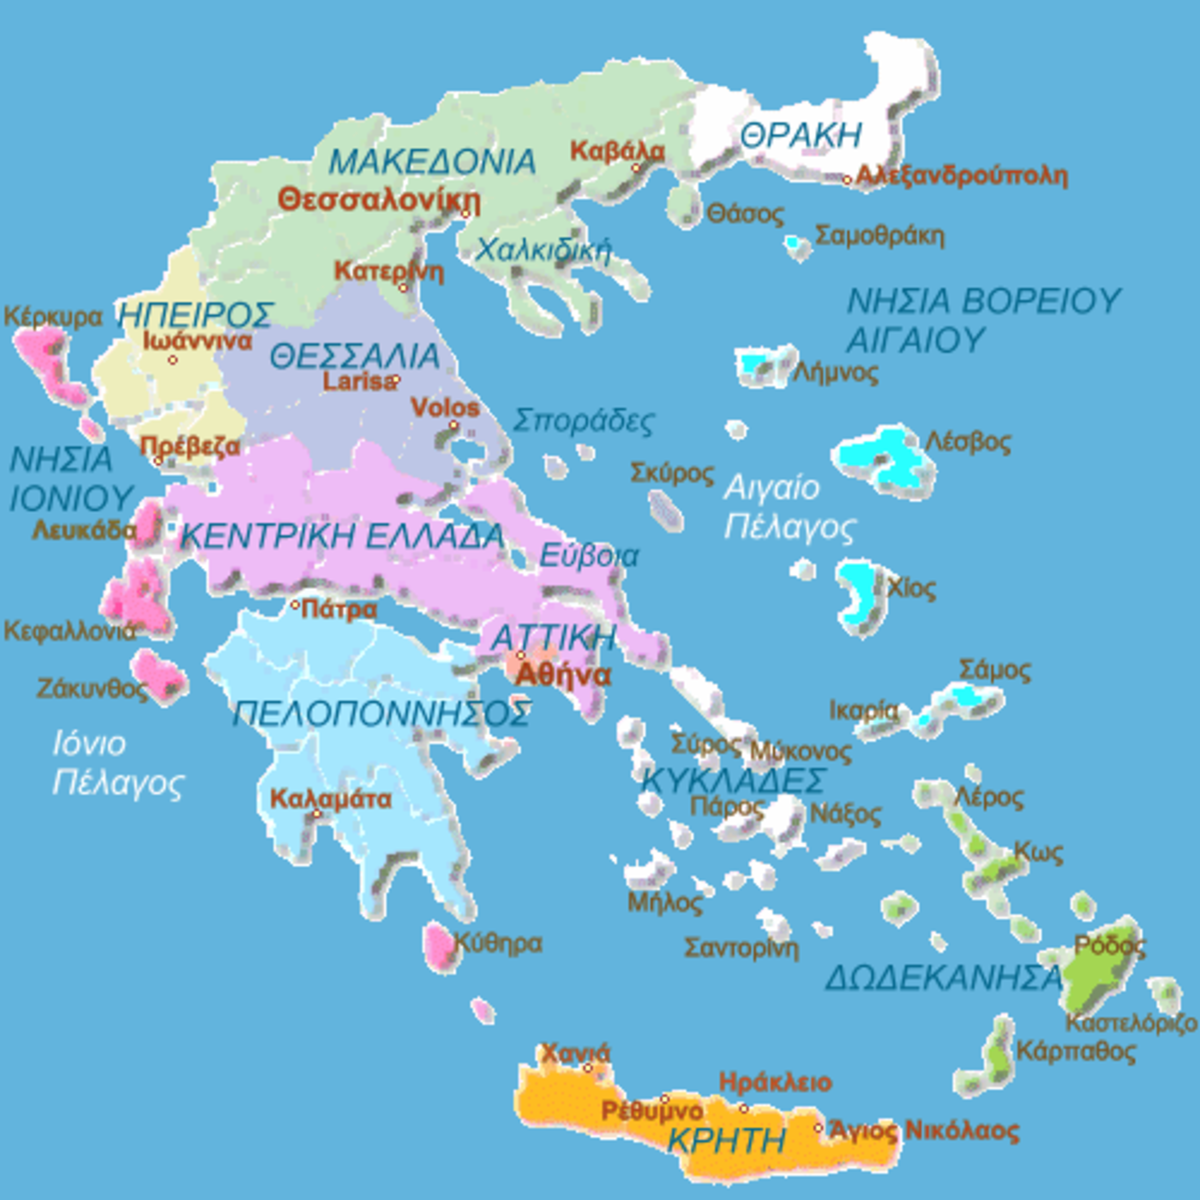 ΑΠΟΚΑΛΥΠΤΙΚΟ: Ποιες πόλεις της Ελλάδας θα… ψηθούν!